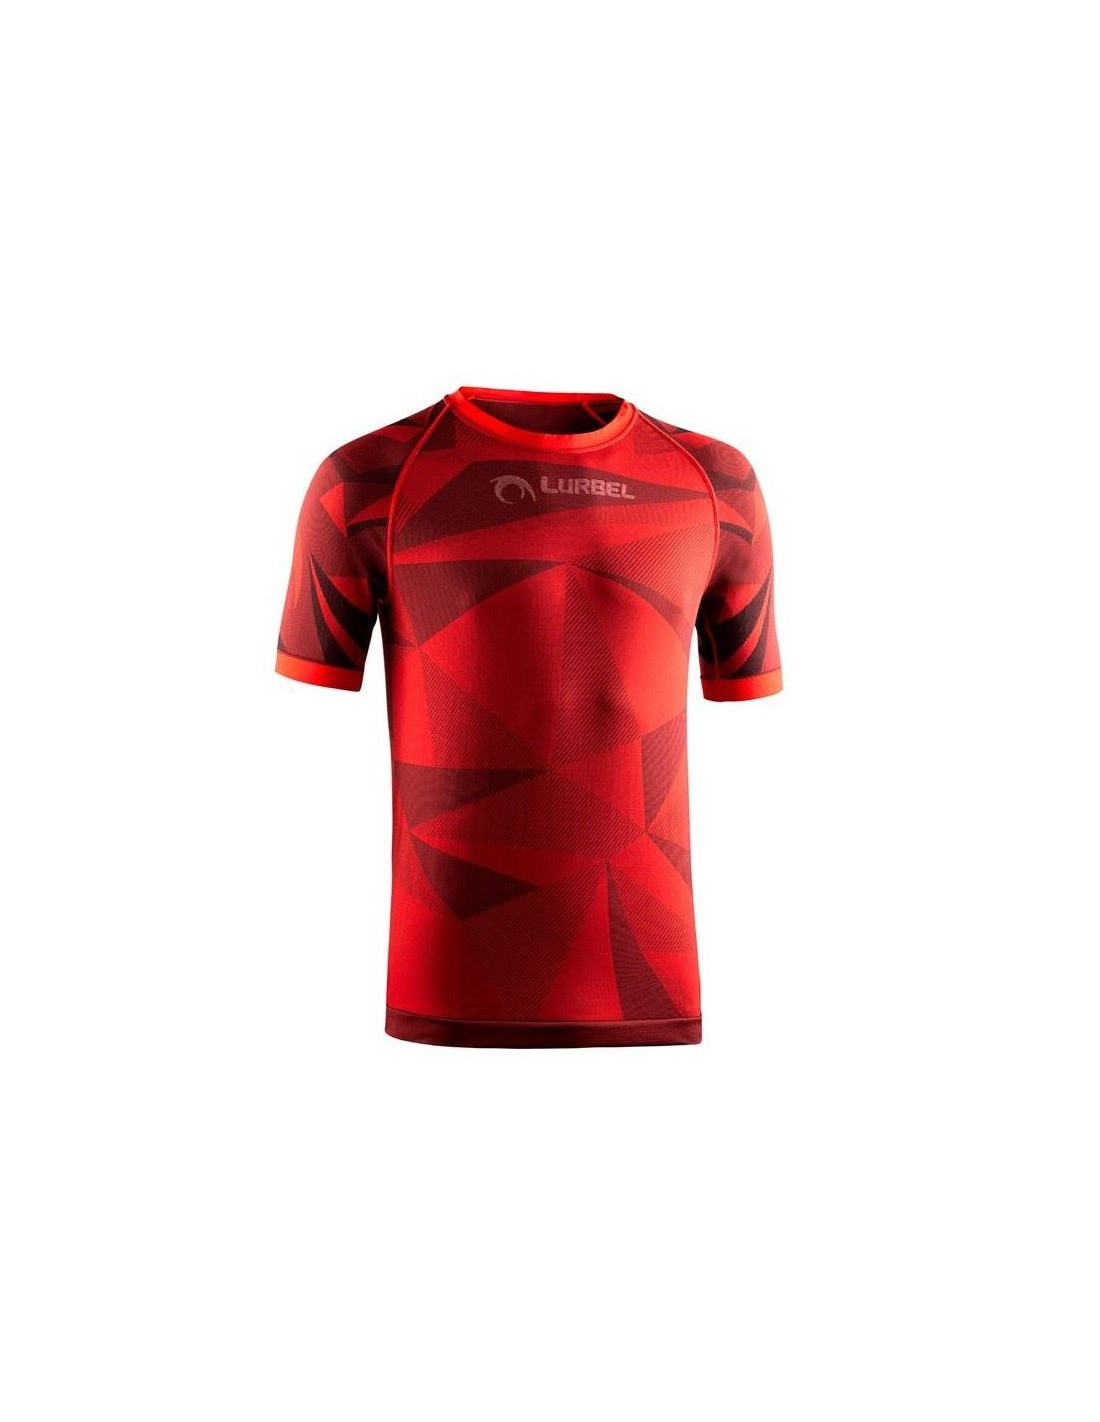 Camiseta de running lurbel samba hombre red